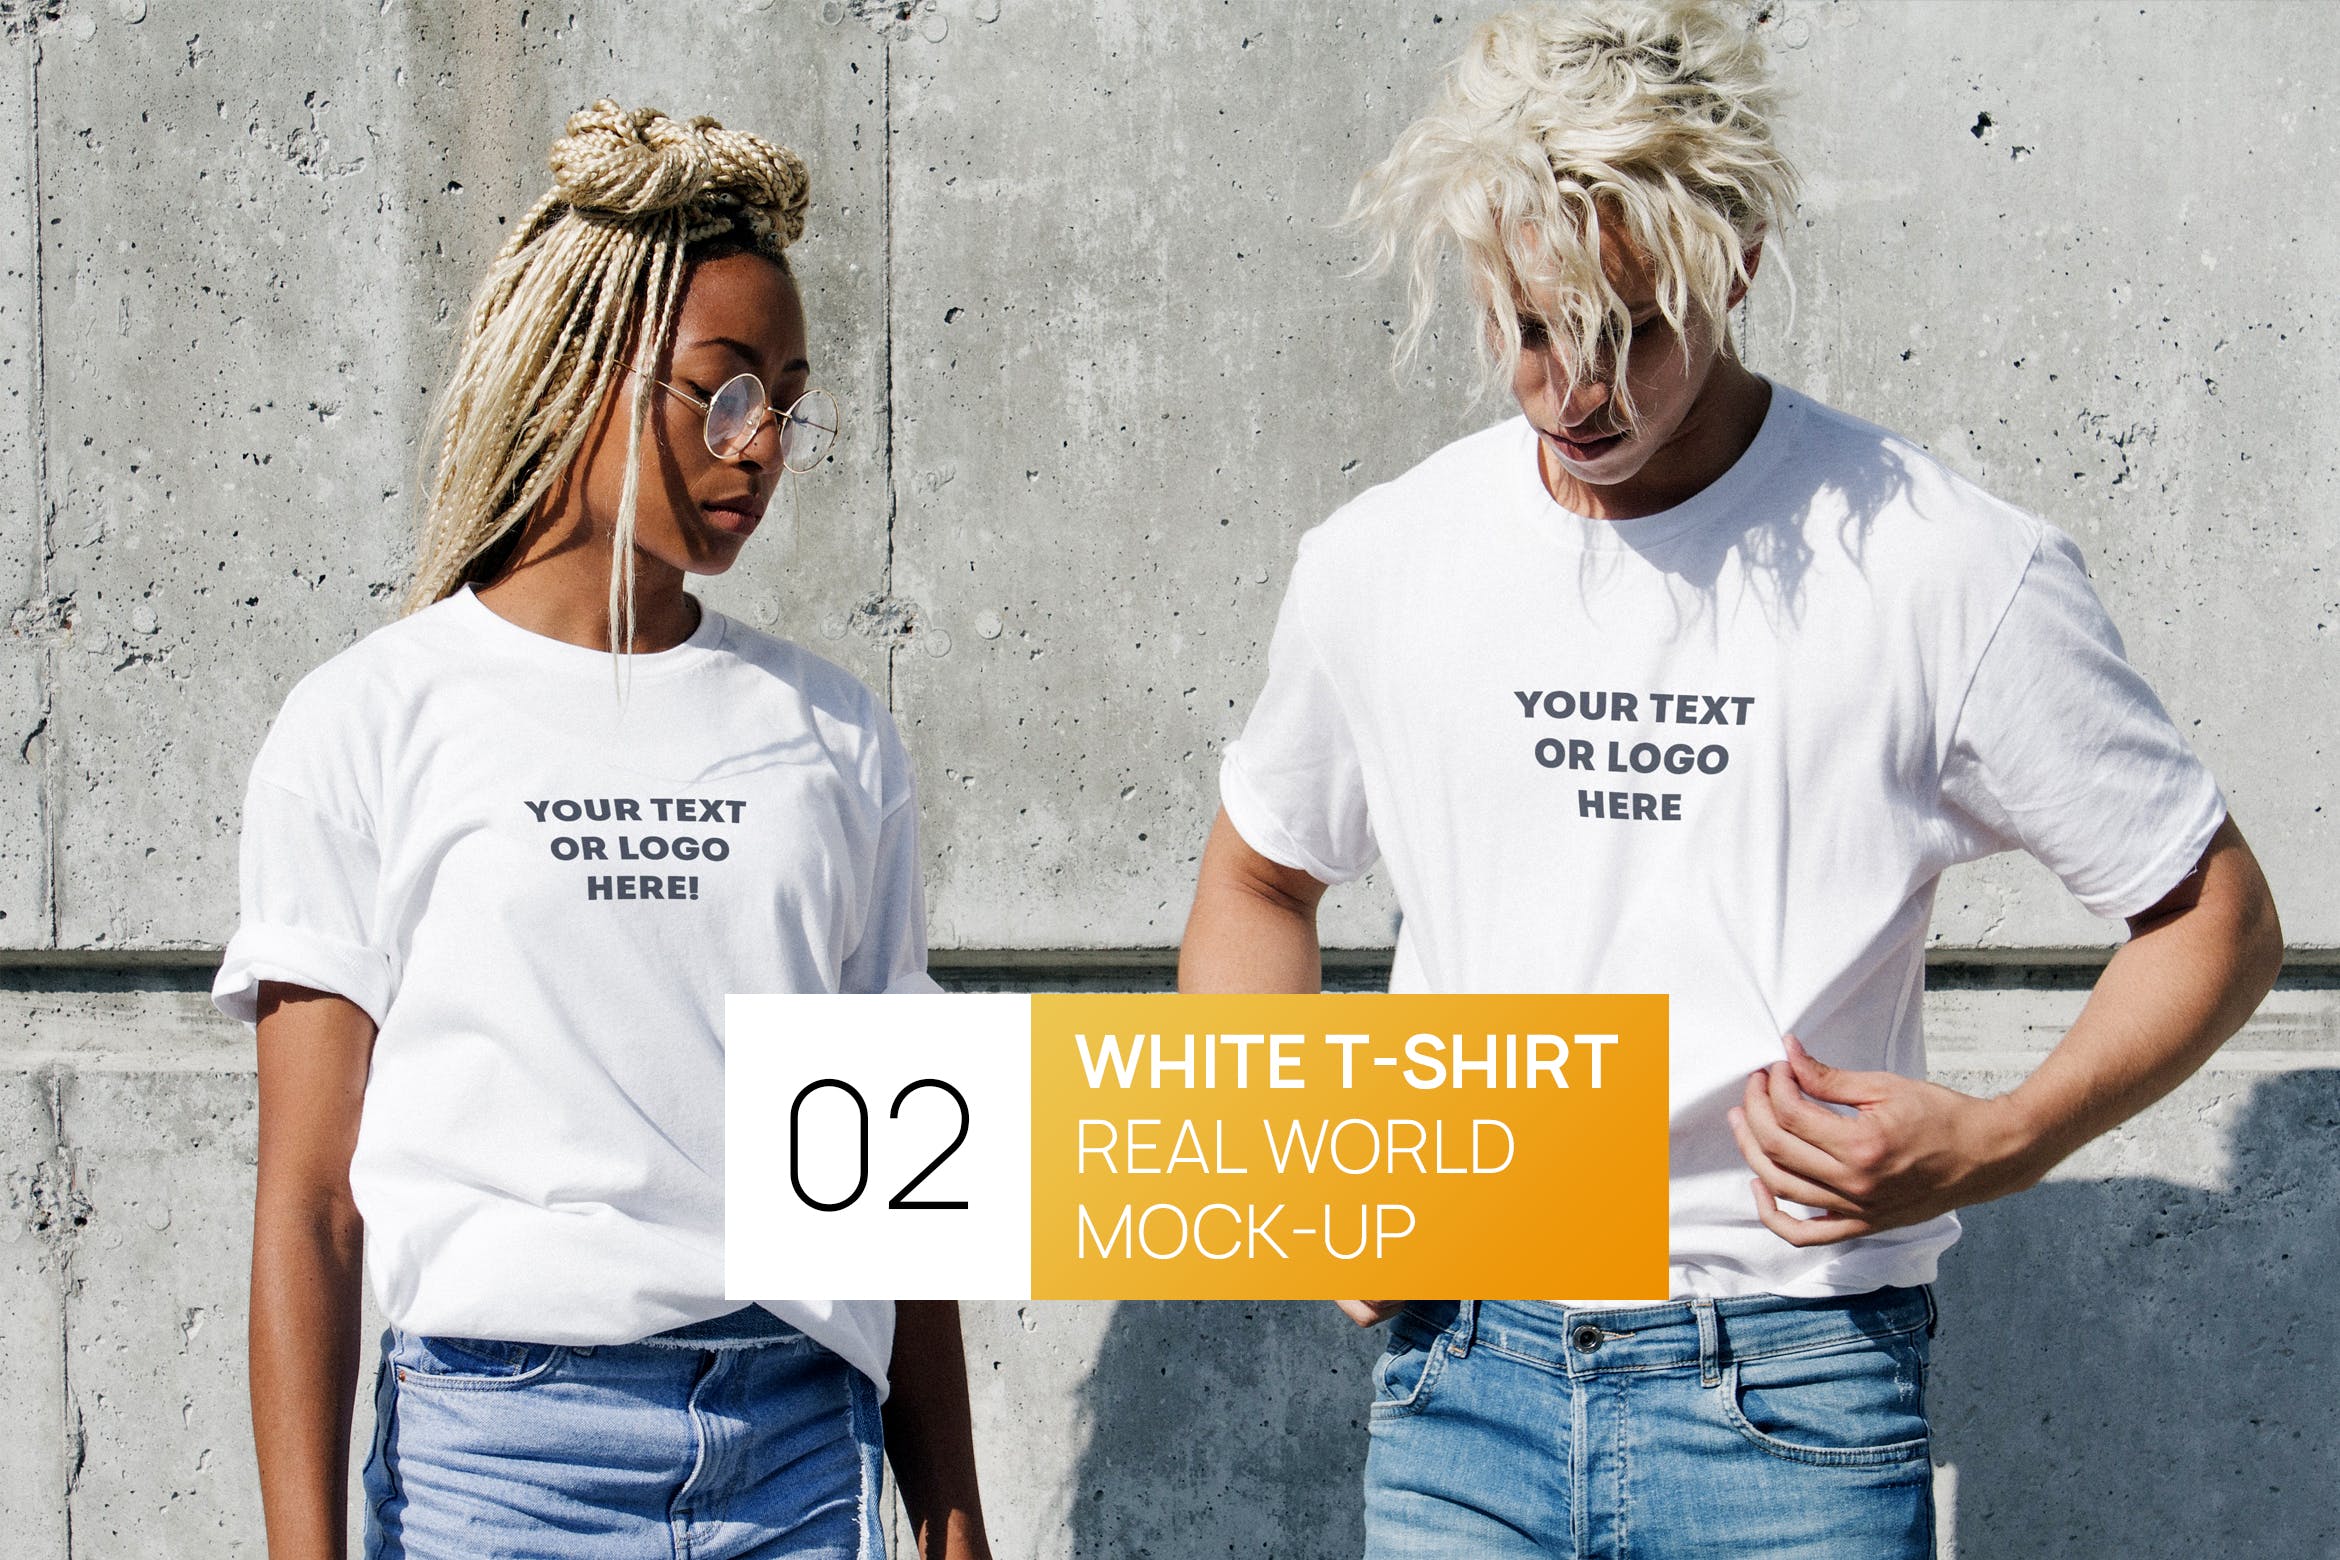 情侣T恤服装设计效果图样机16设计网精选 Two Persons White T-Shirt Real World Photo Mock-up插图